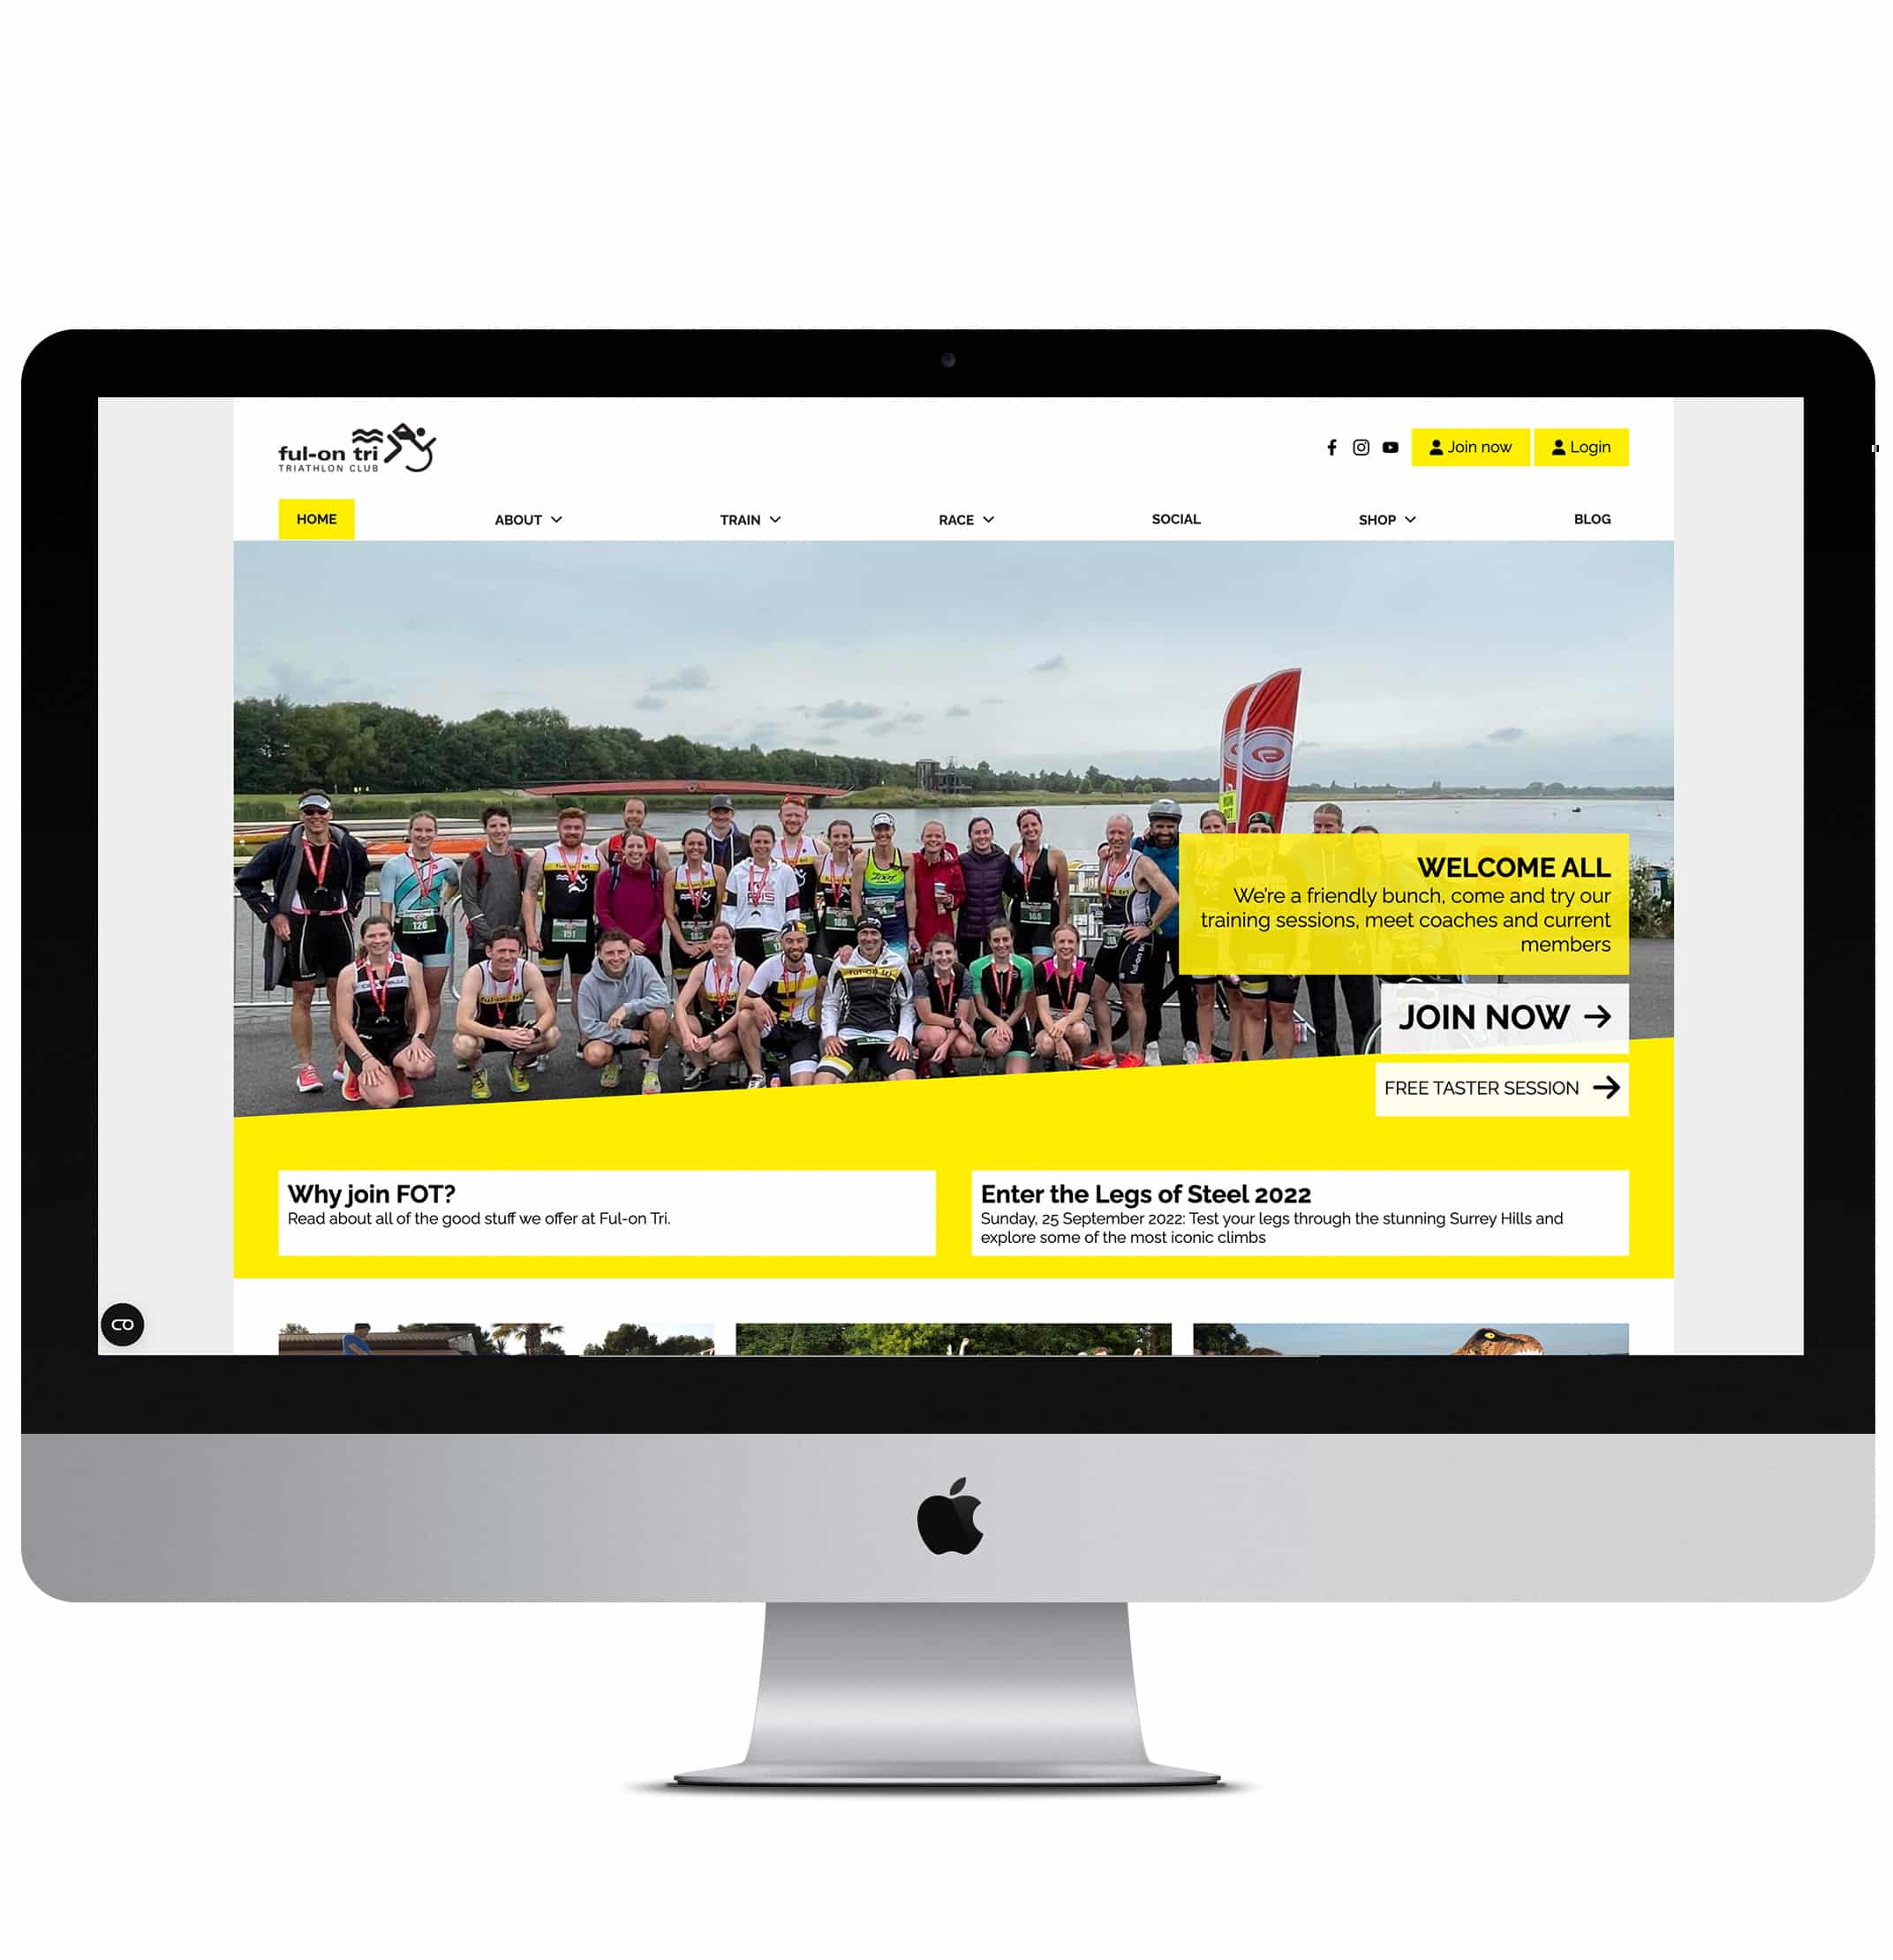 Full on Tri Triathlon Club Website